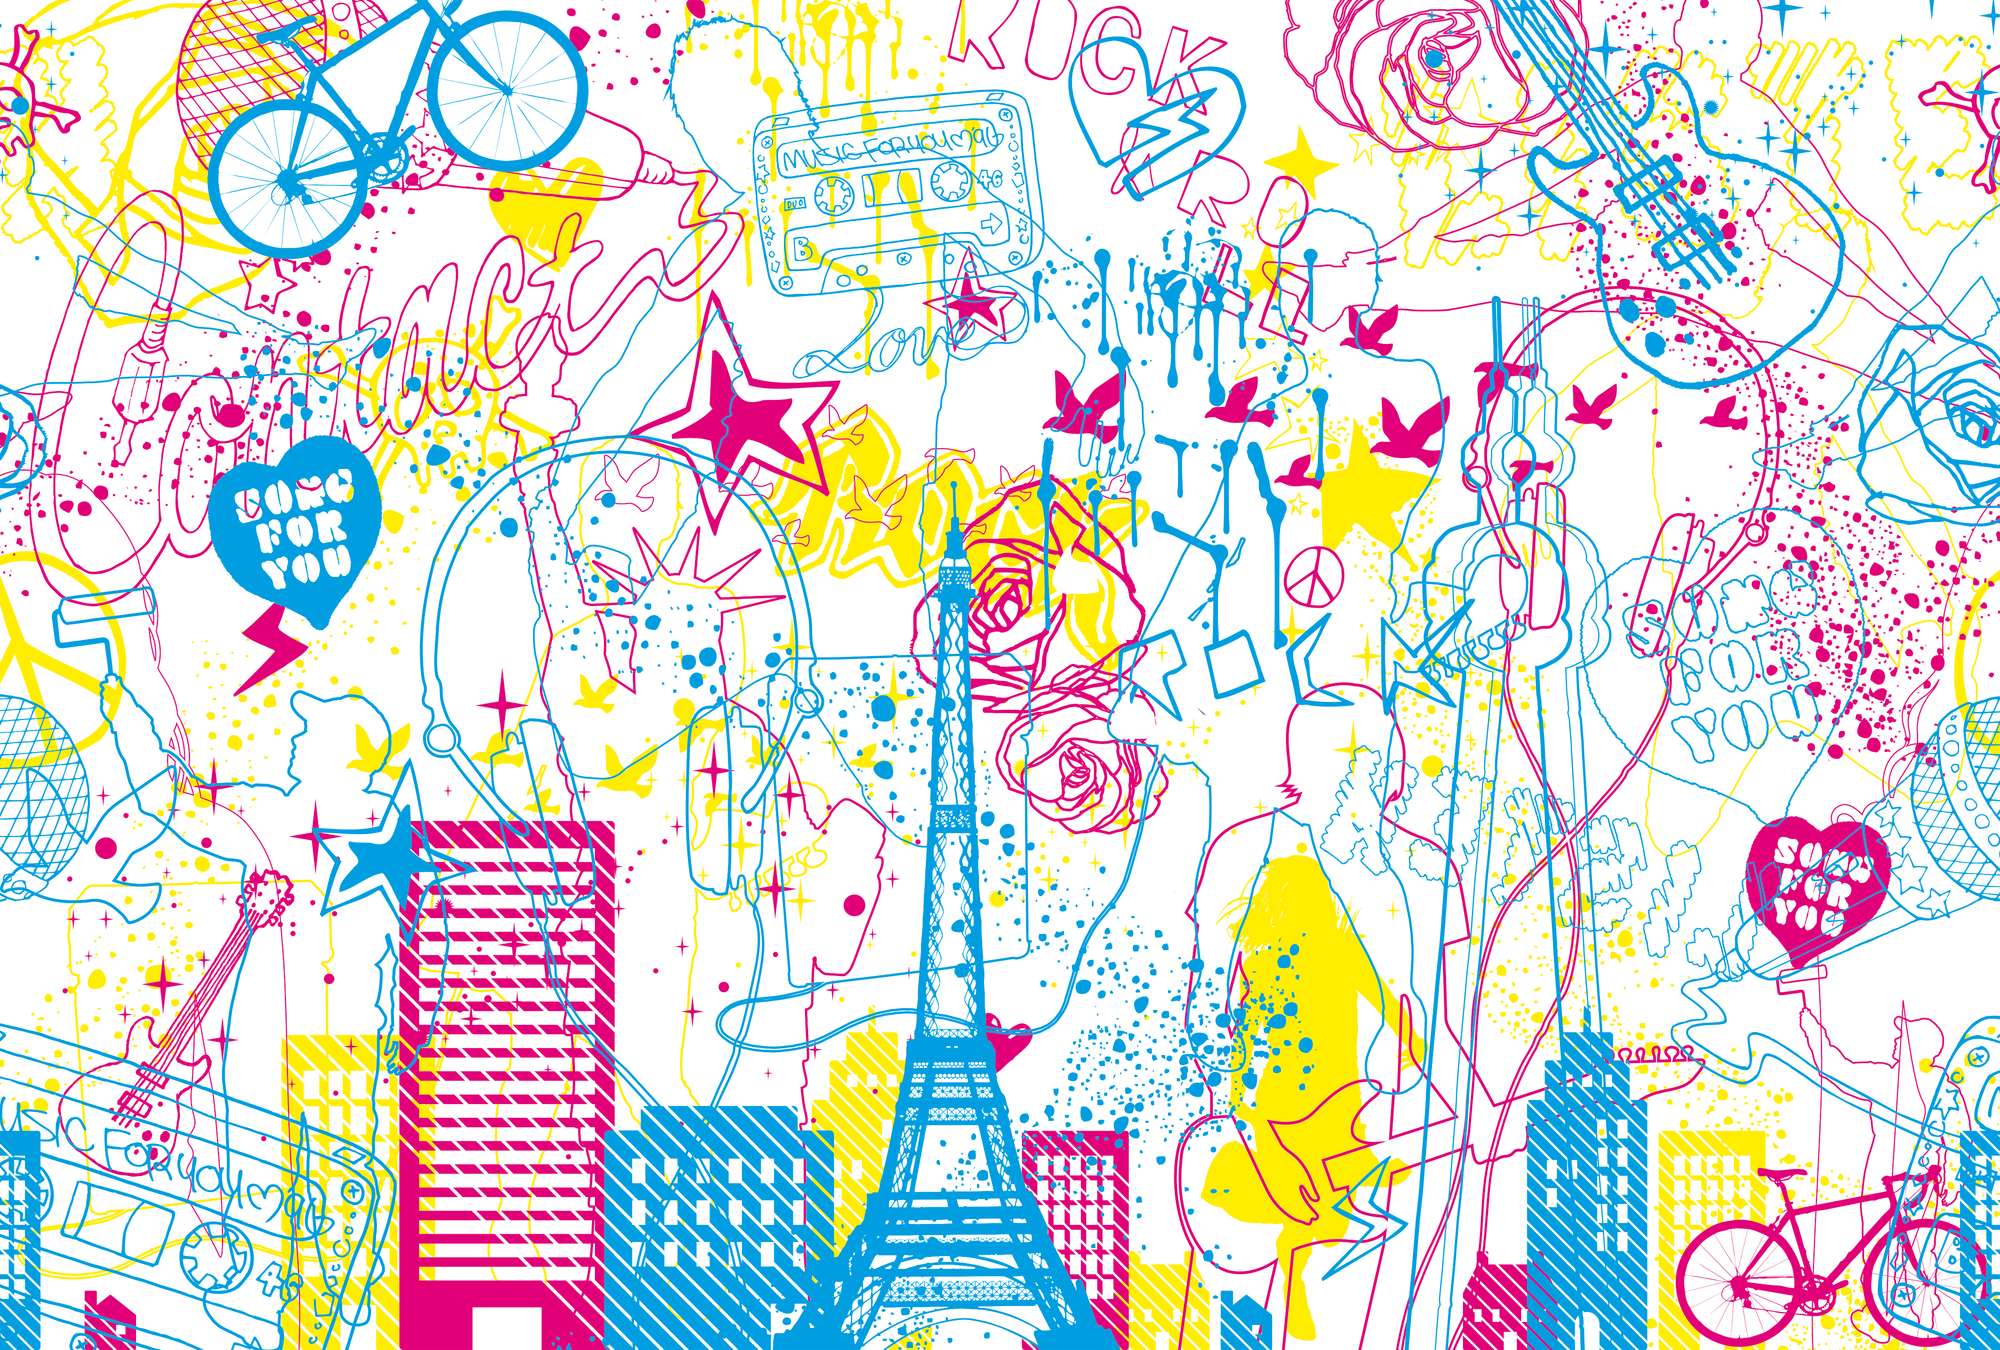             Musik & Stadt – Fototapete Kinder Design Doodle Look
        